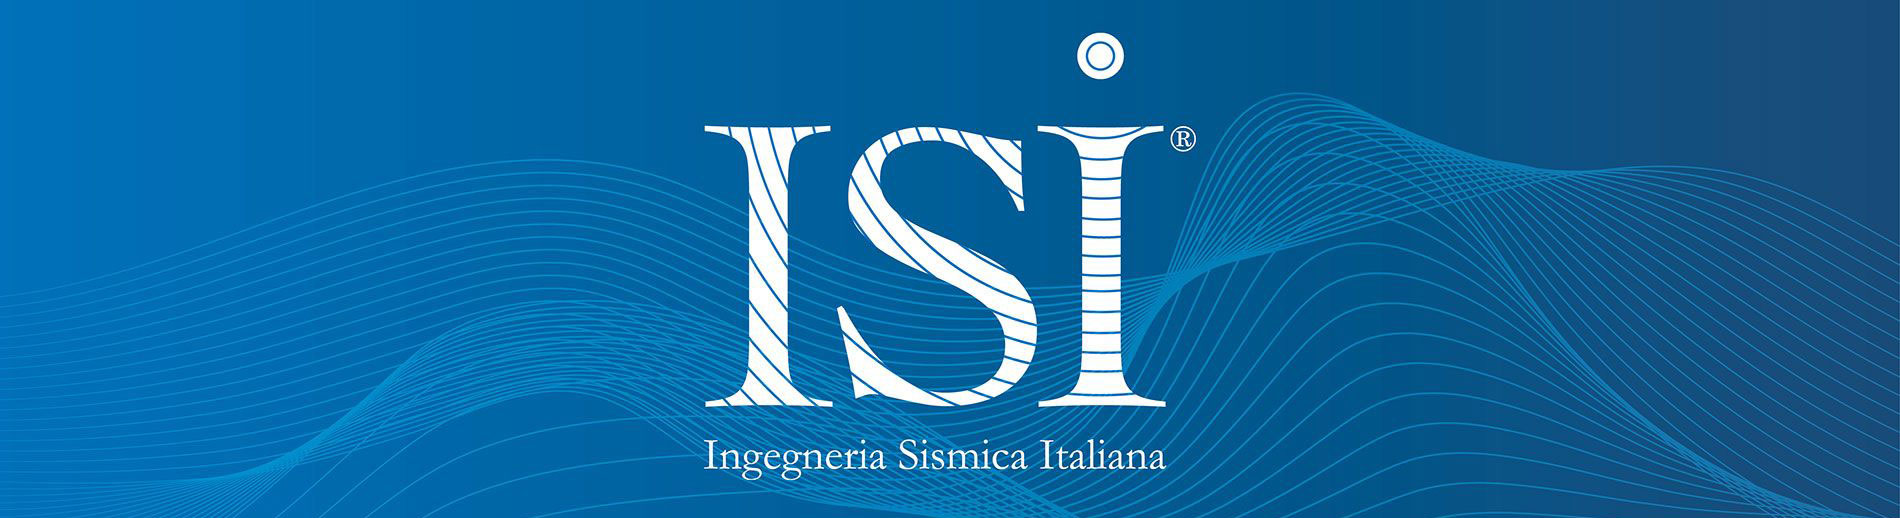 ISI - ingegneria Sismica Italiana